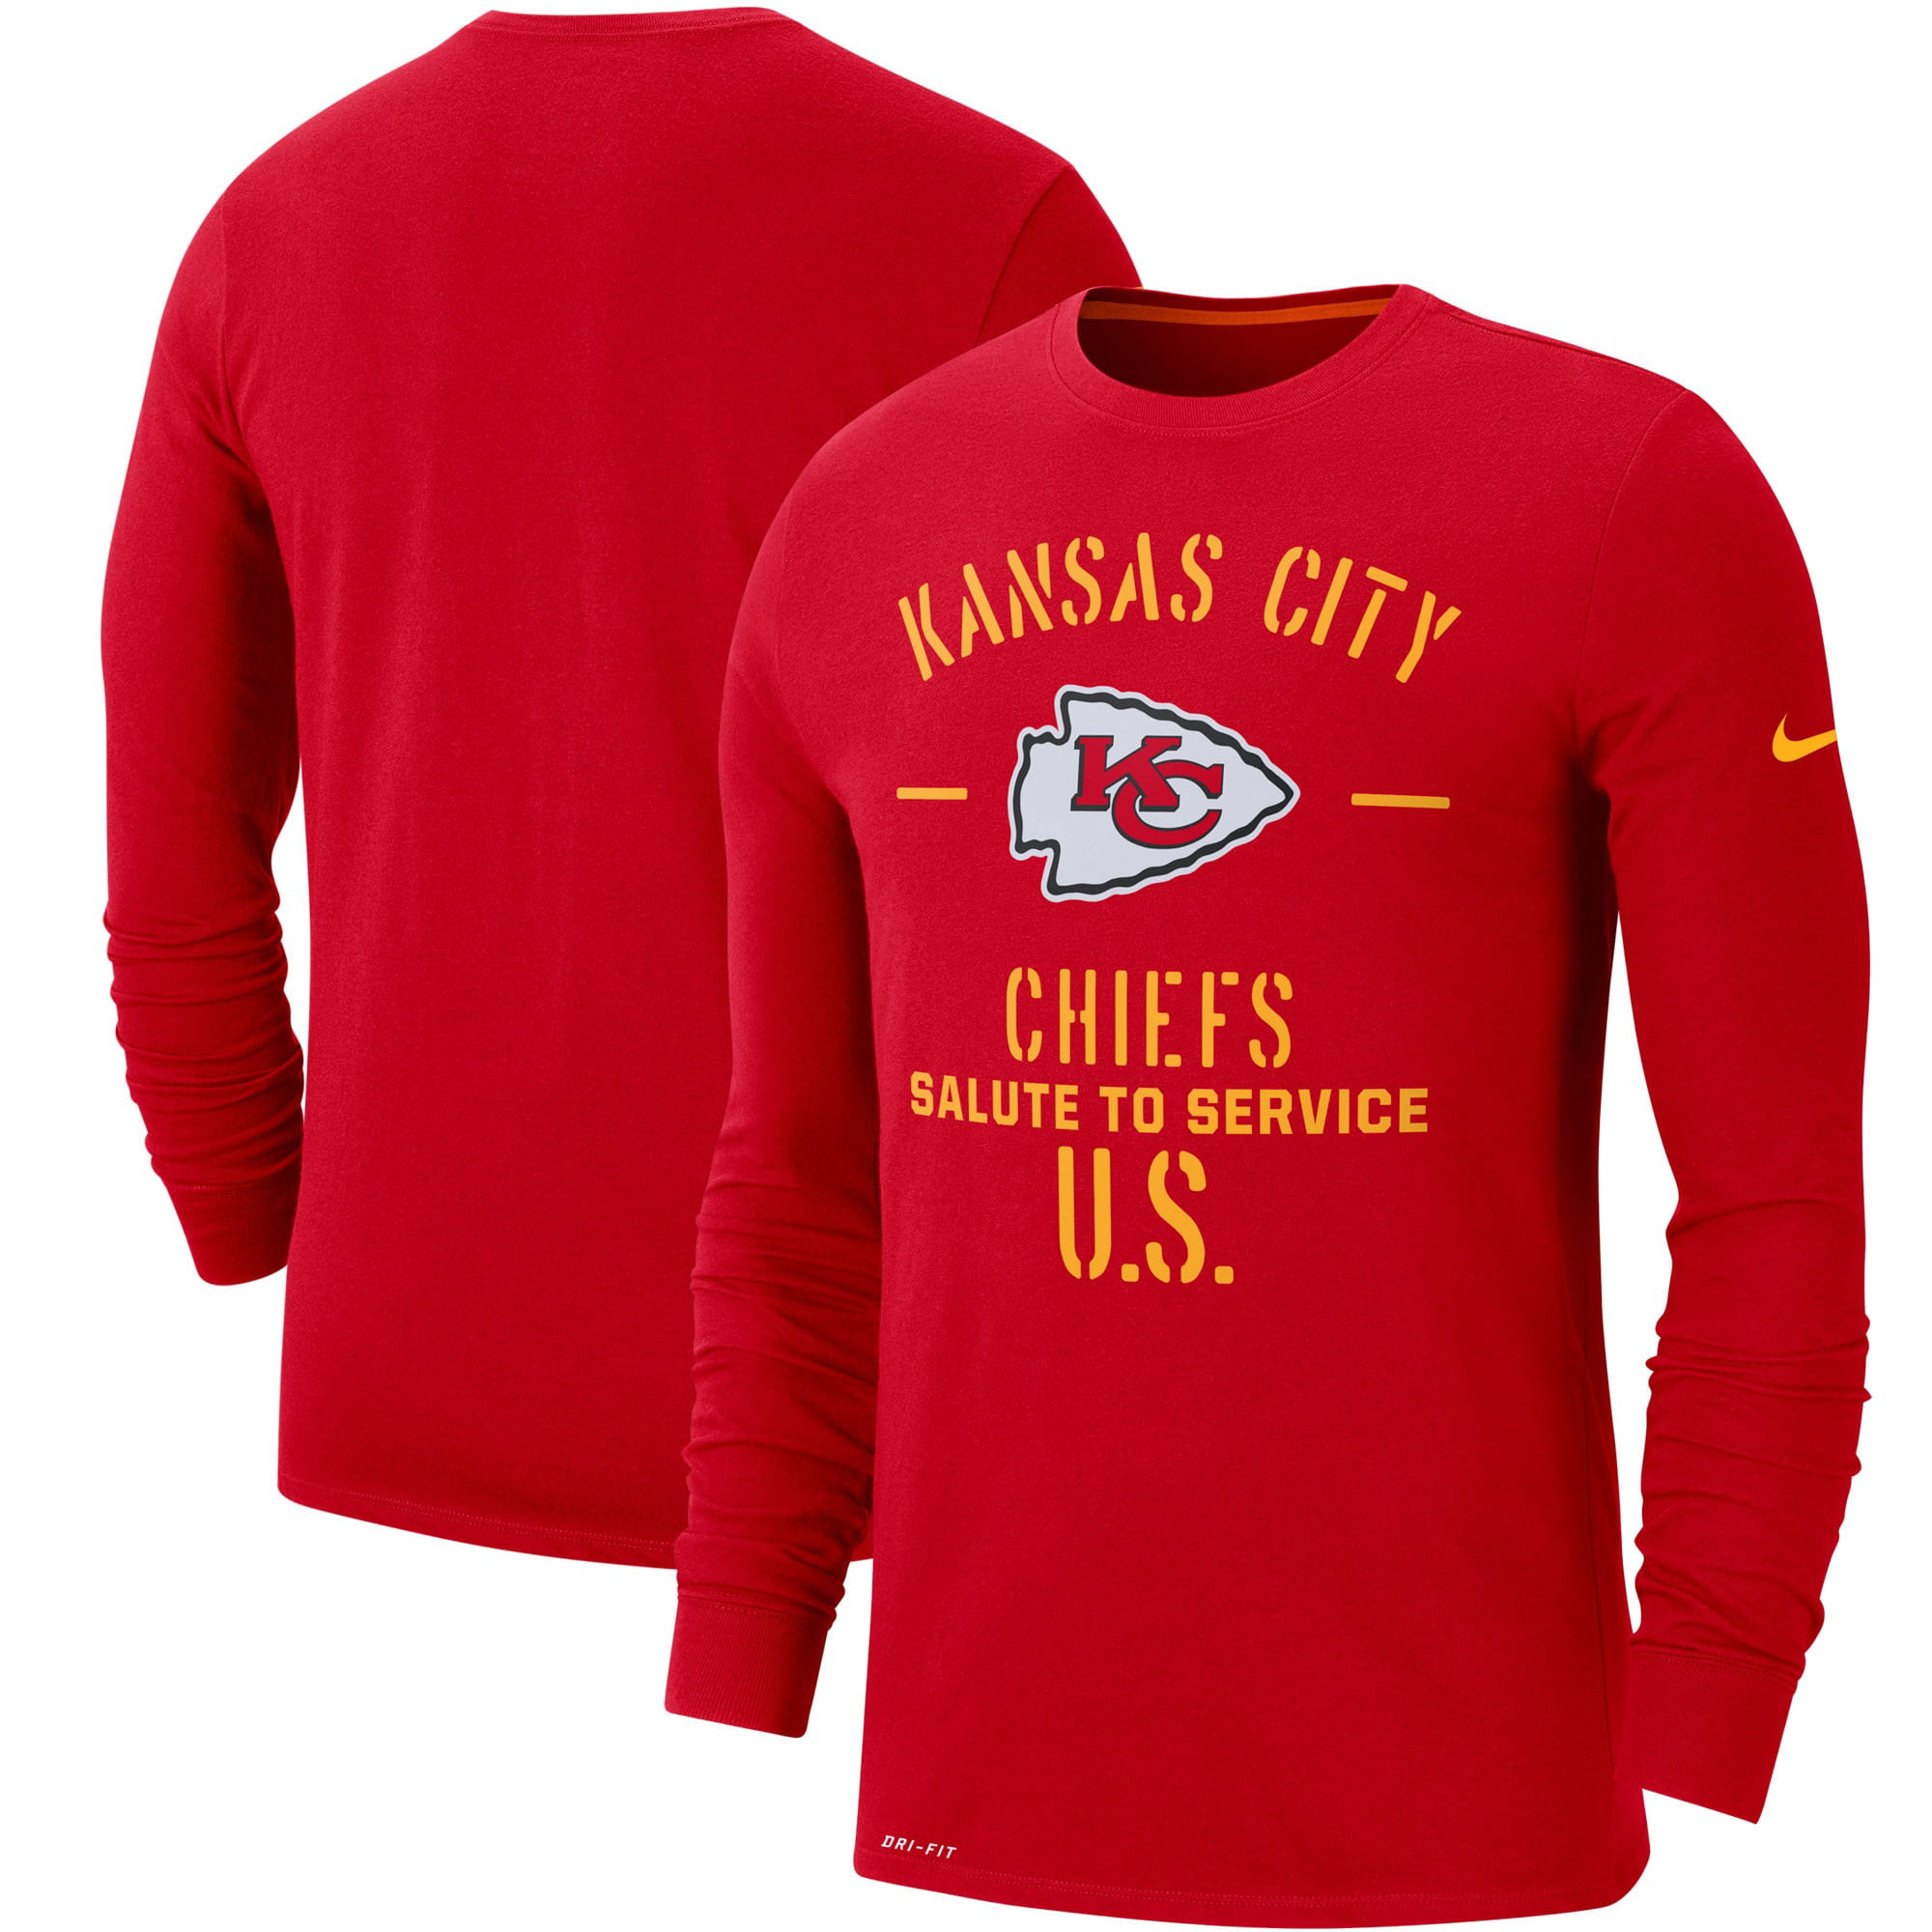 chiefs long sleeve t shirt